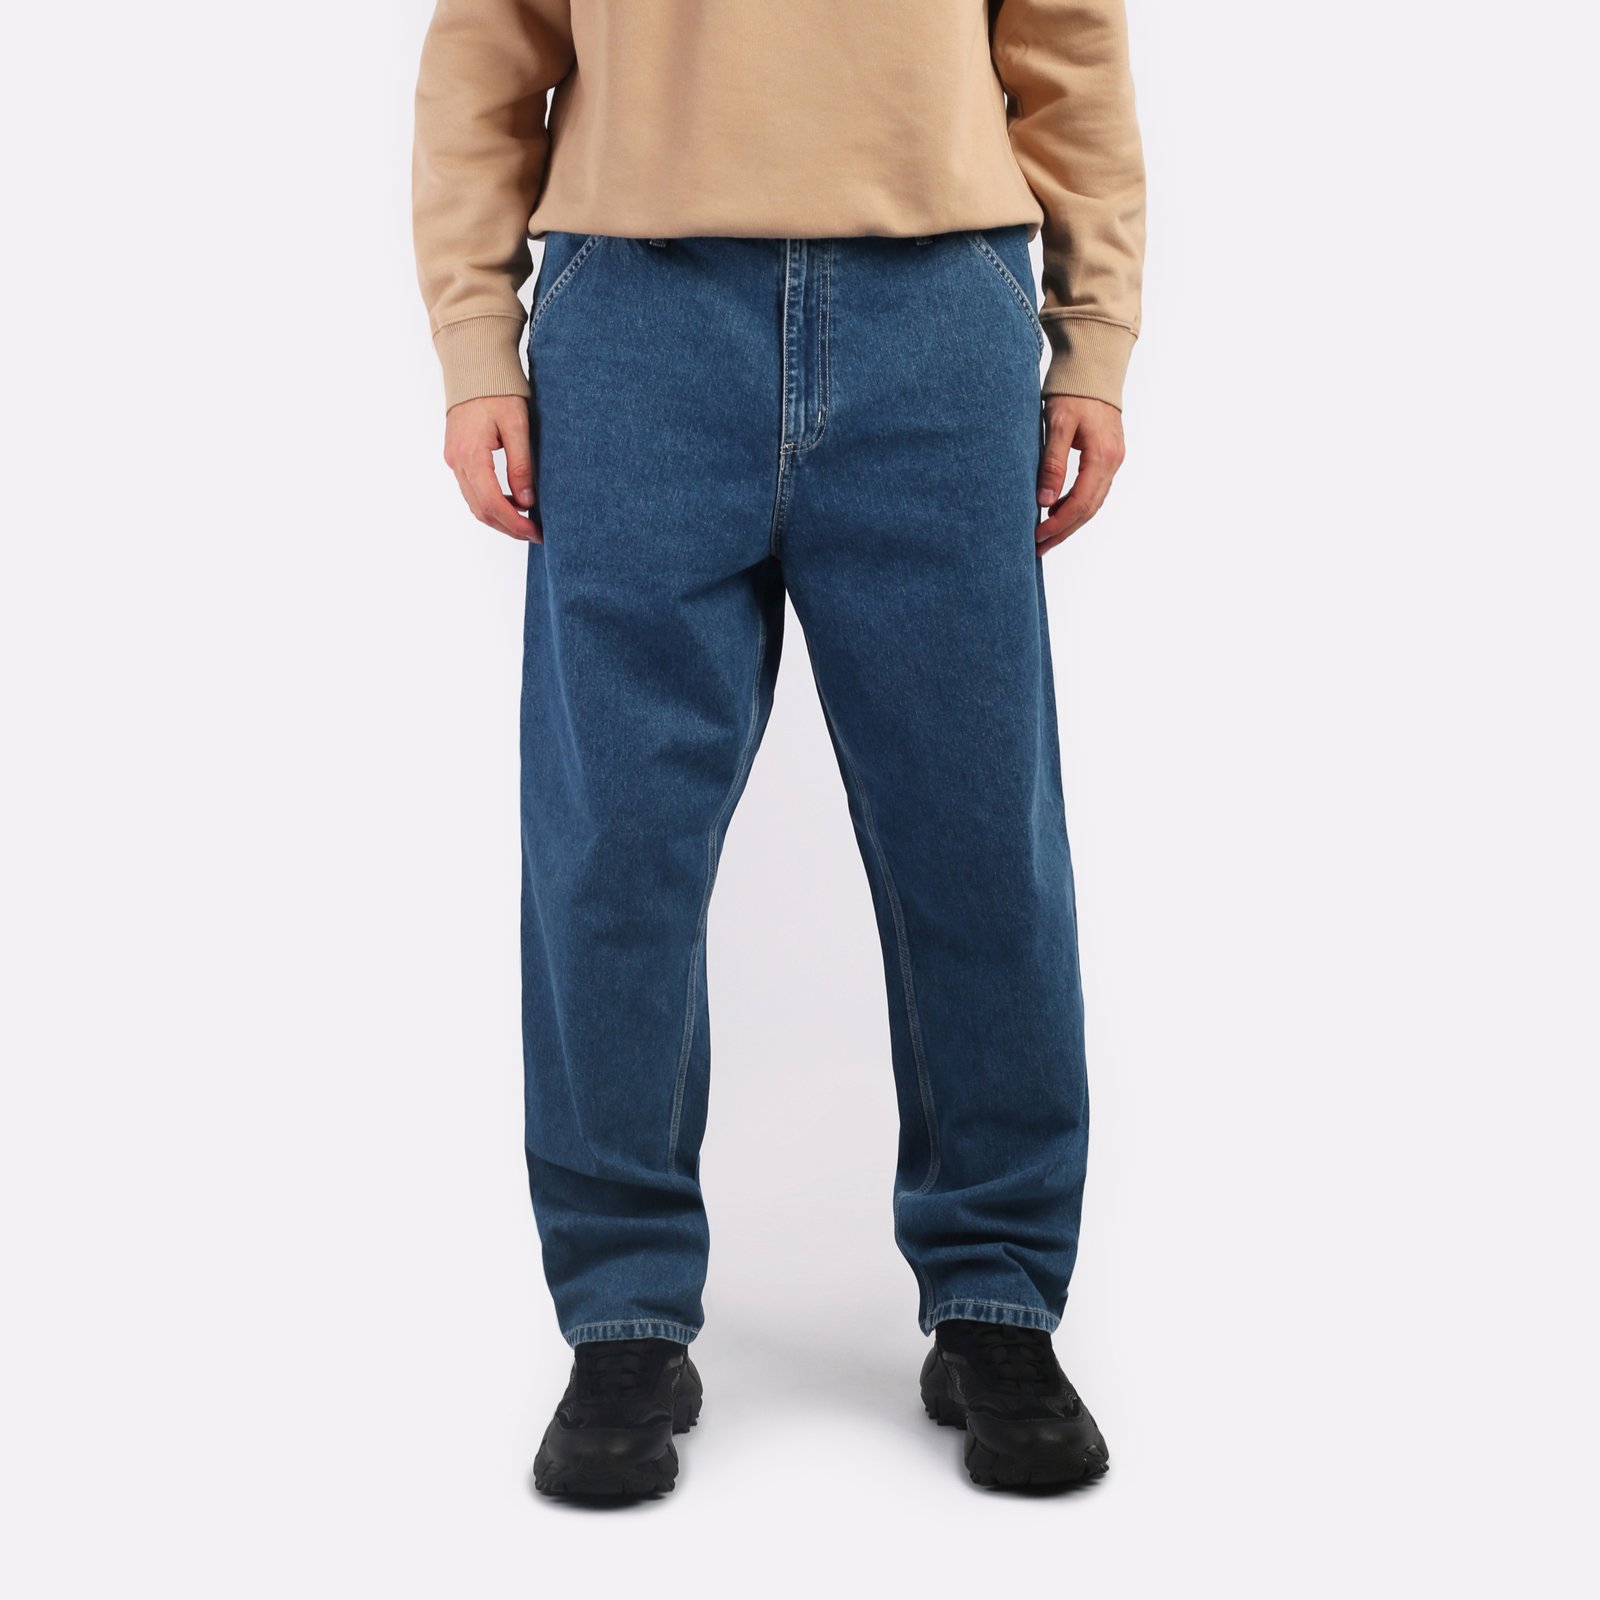 мужские синие джинсы Carhartt WIP Simple Pant I022947-blue - цена, описание, фото 1